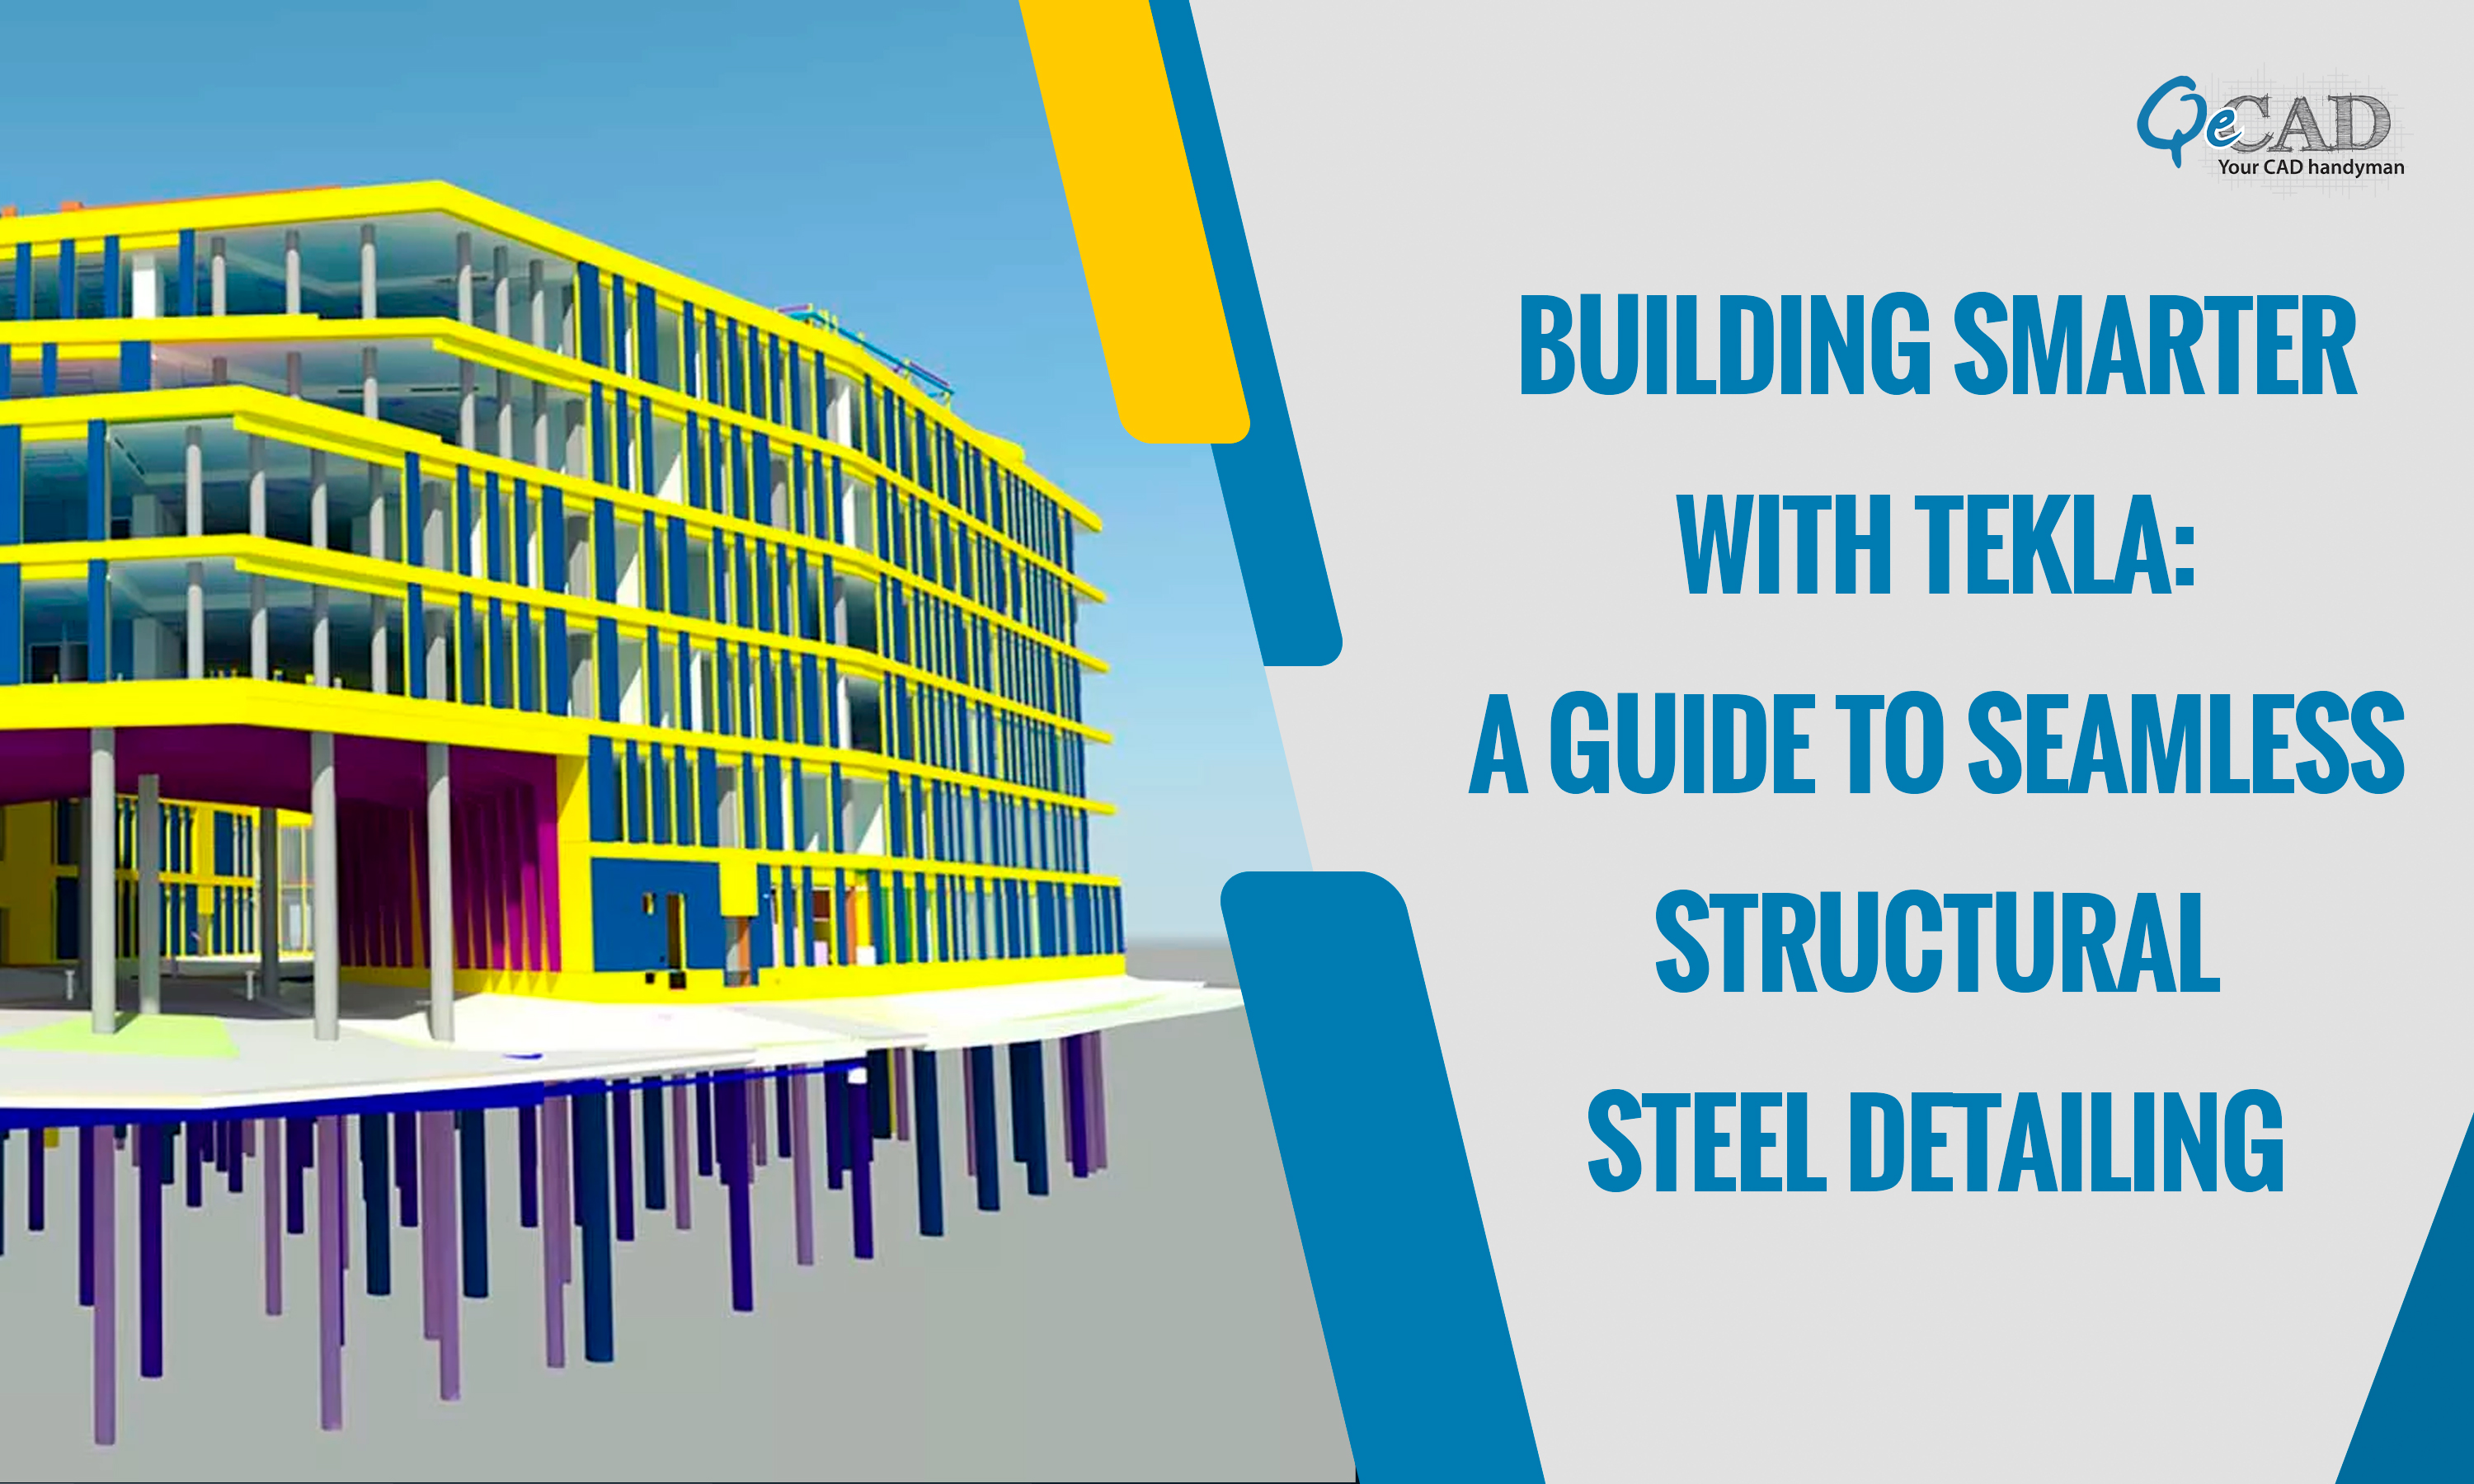 Tekla Steel Detailing Services